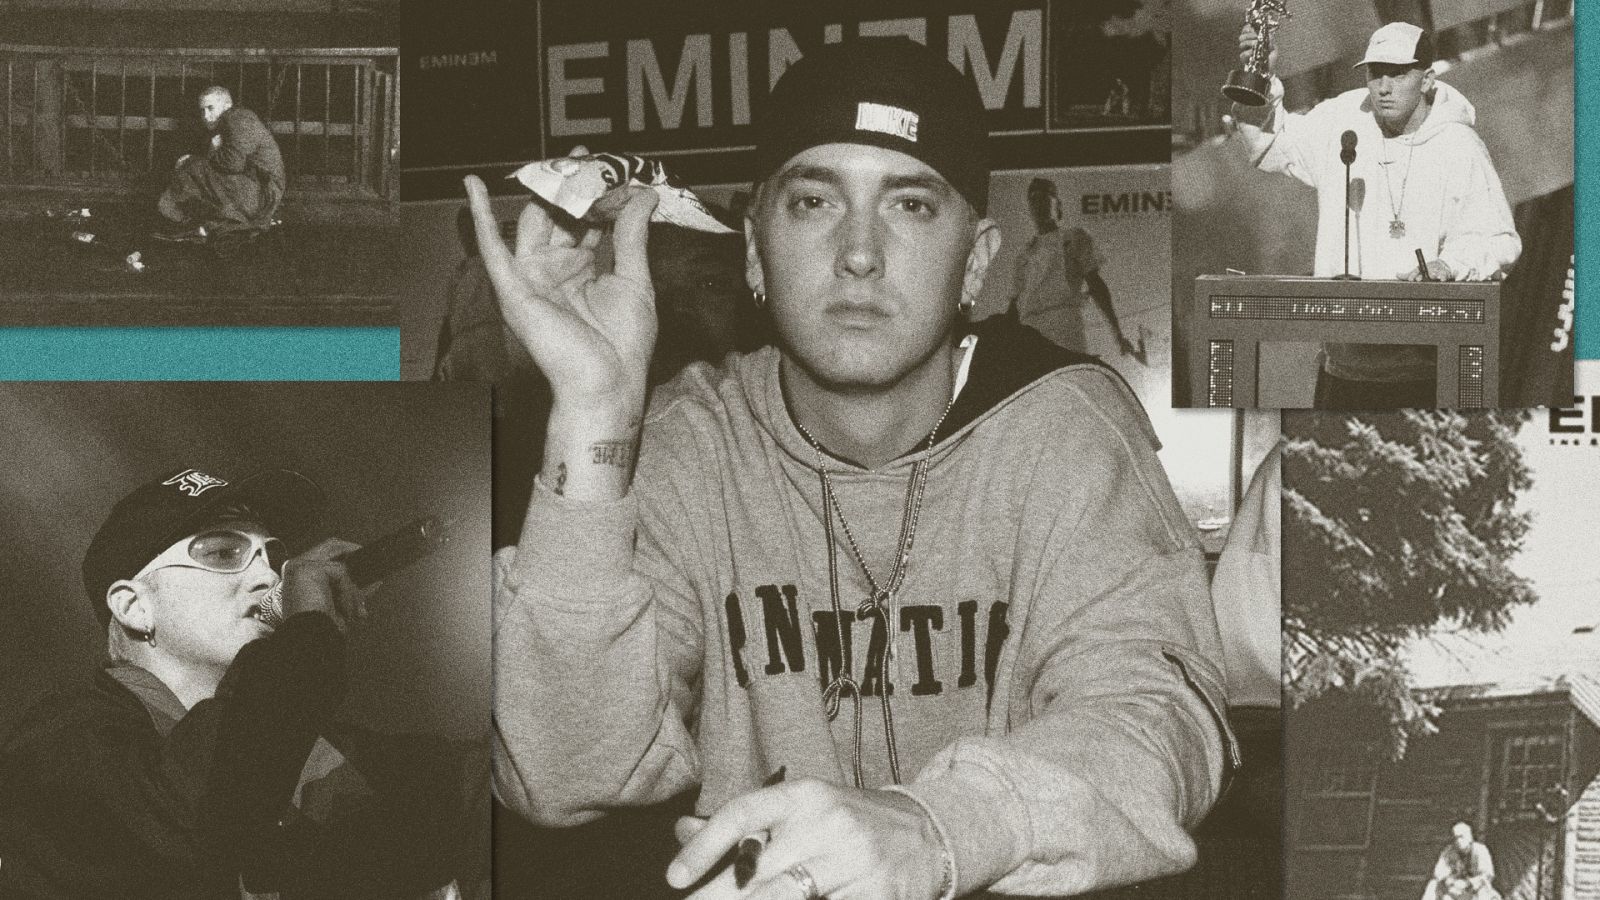  Se cumplen 20 años de The Marsall Mathers LP, el álbum de Eminem que marcó la historia del rap